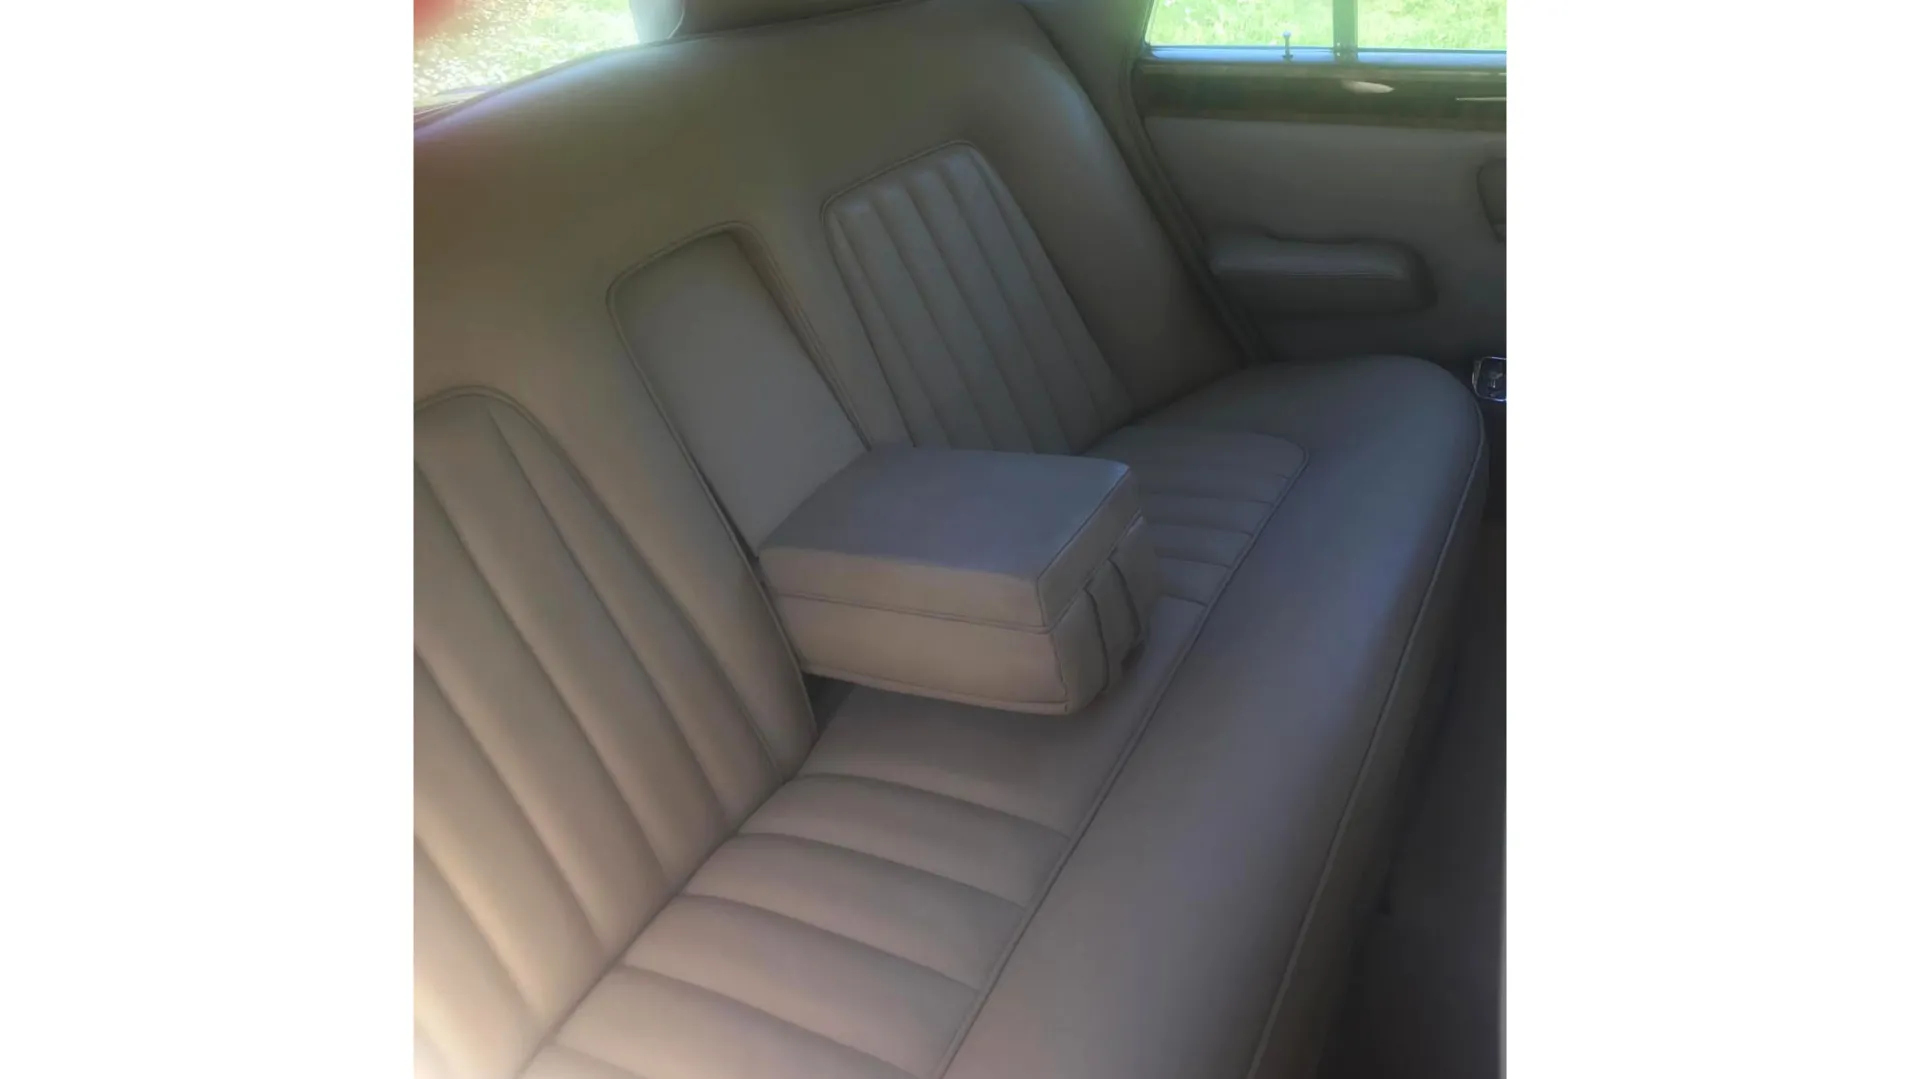 Cream interior rear seats of Rolls-Royce Silver Shadow